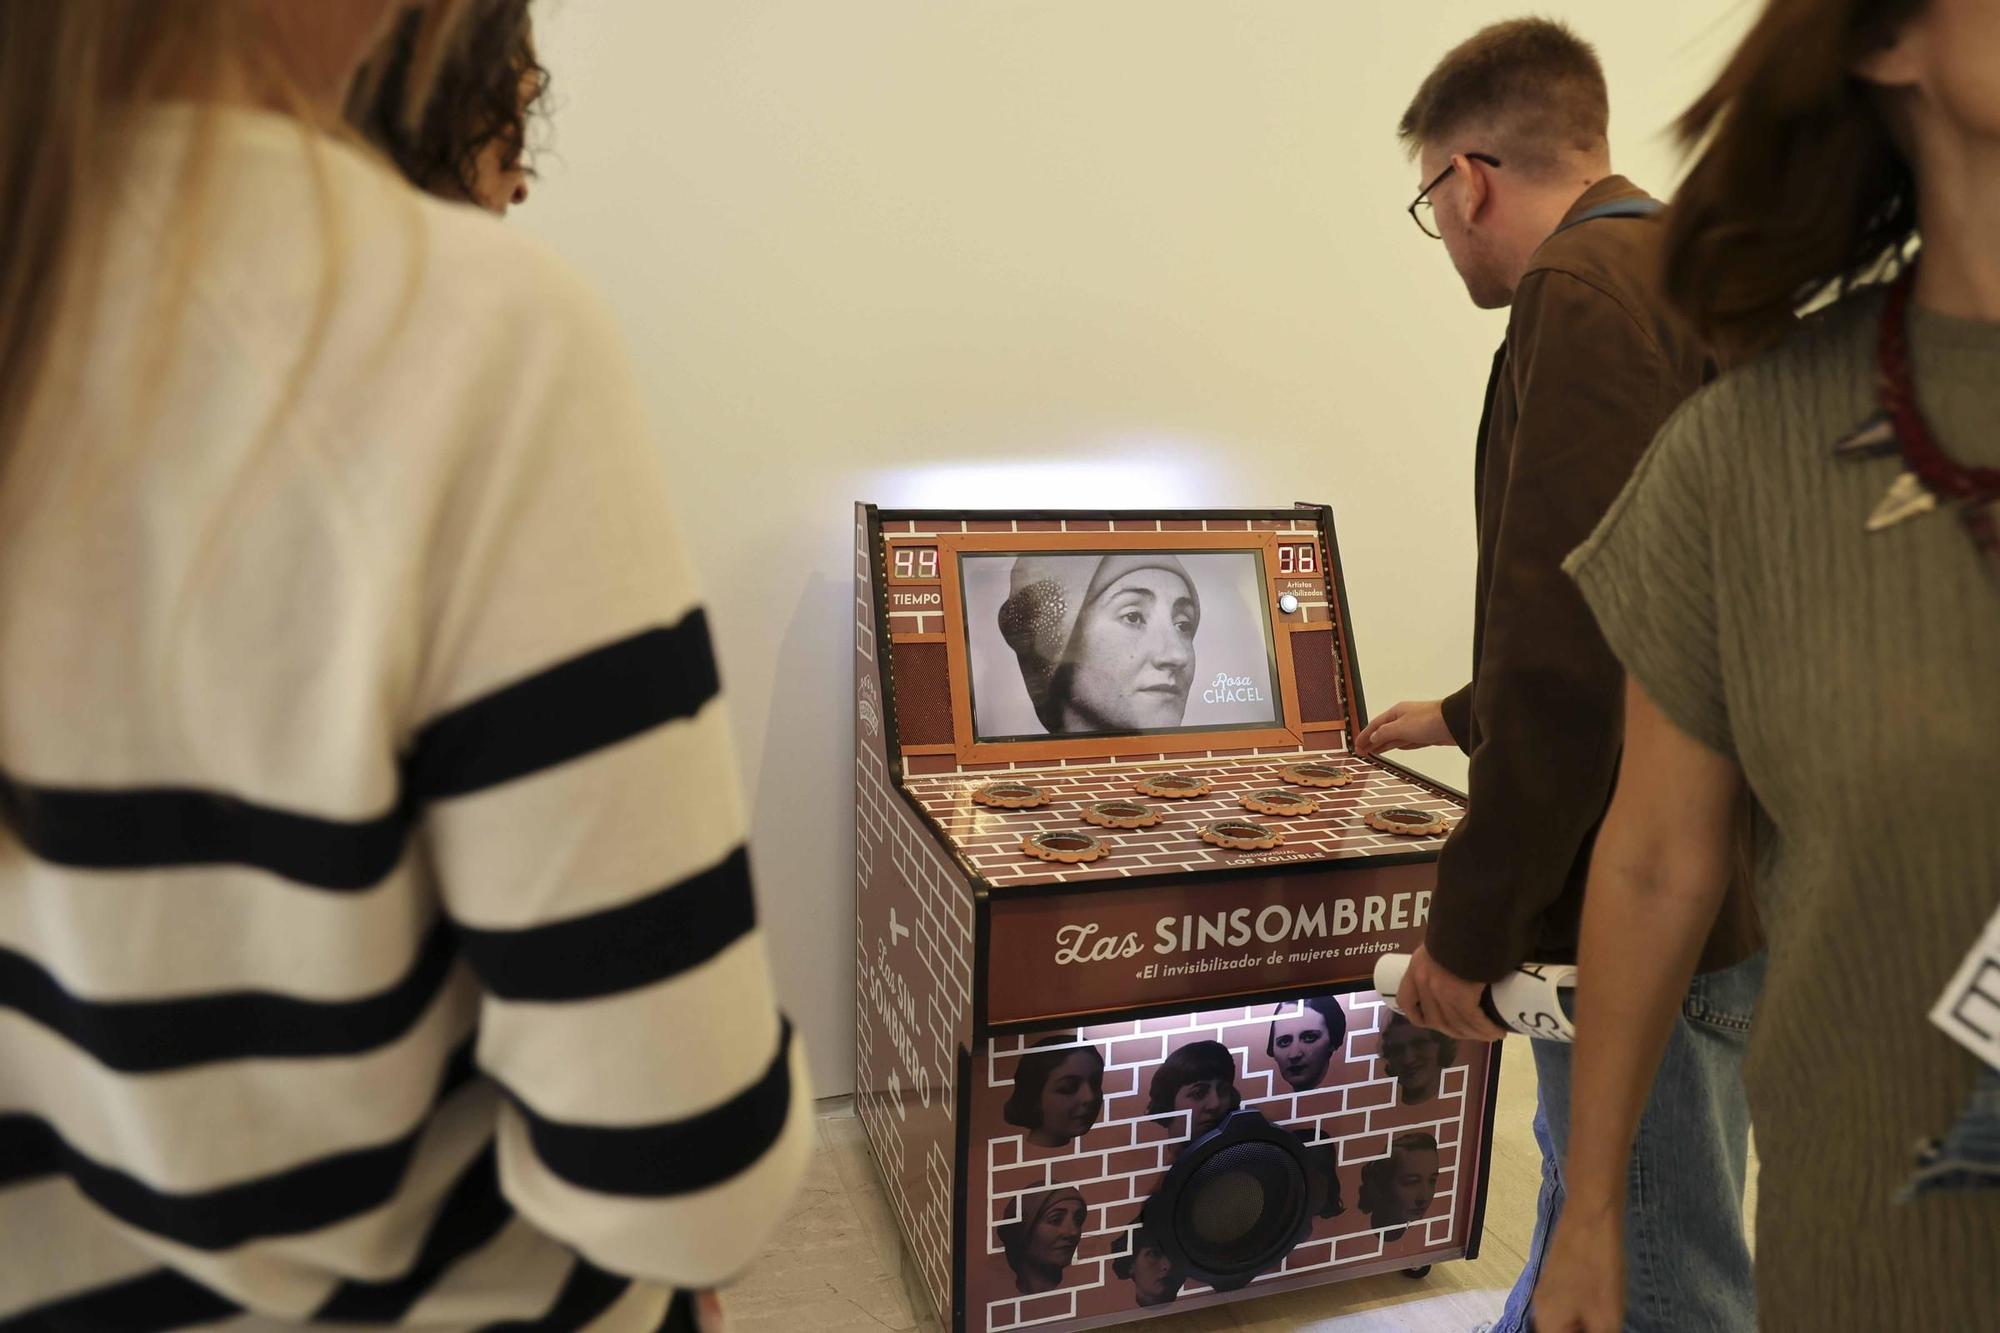 Exposición "Recreativos Federico", una instalación compuesta por siete máquinas recreativas en torno a una obra dramática de Federico García Lorca